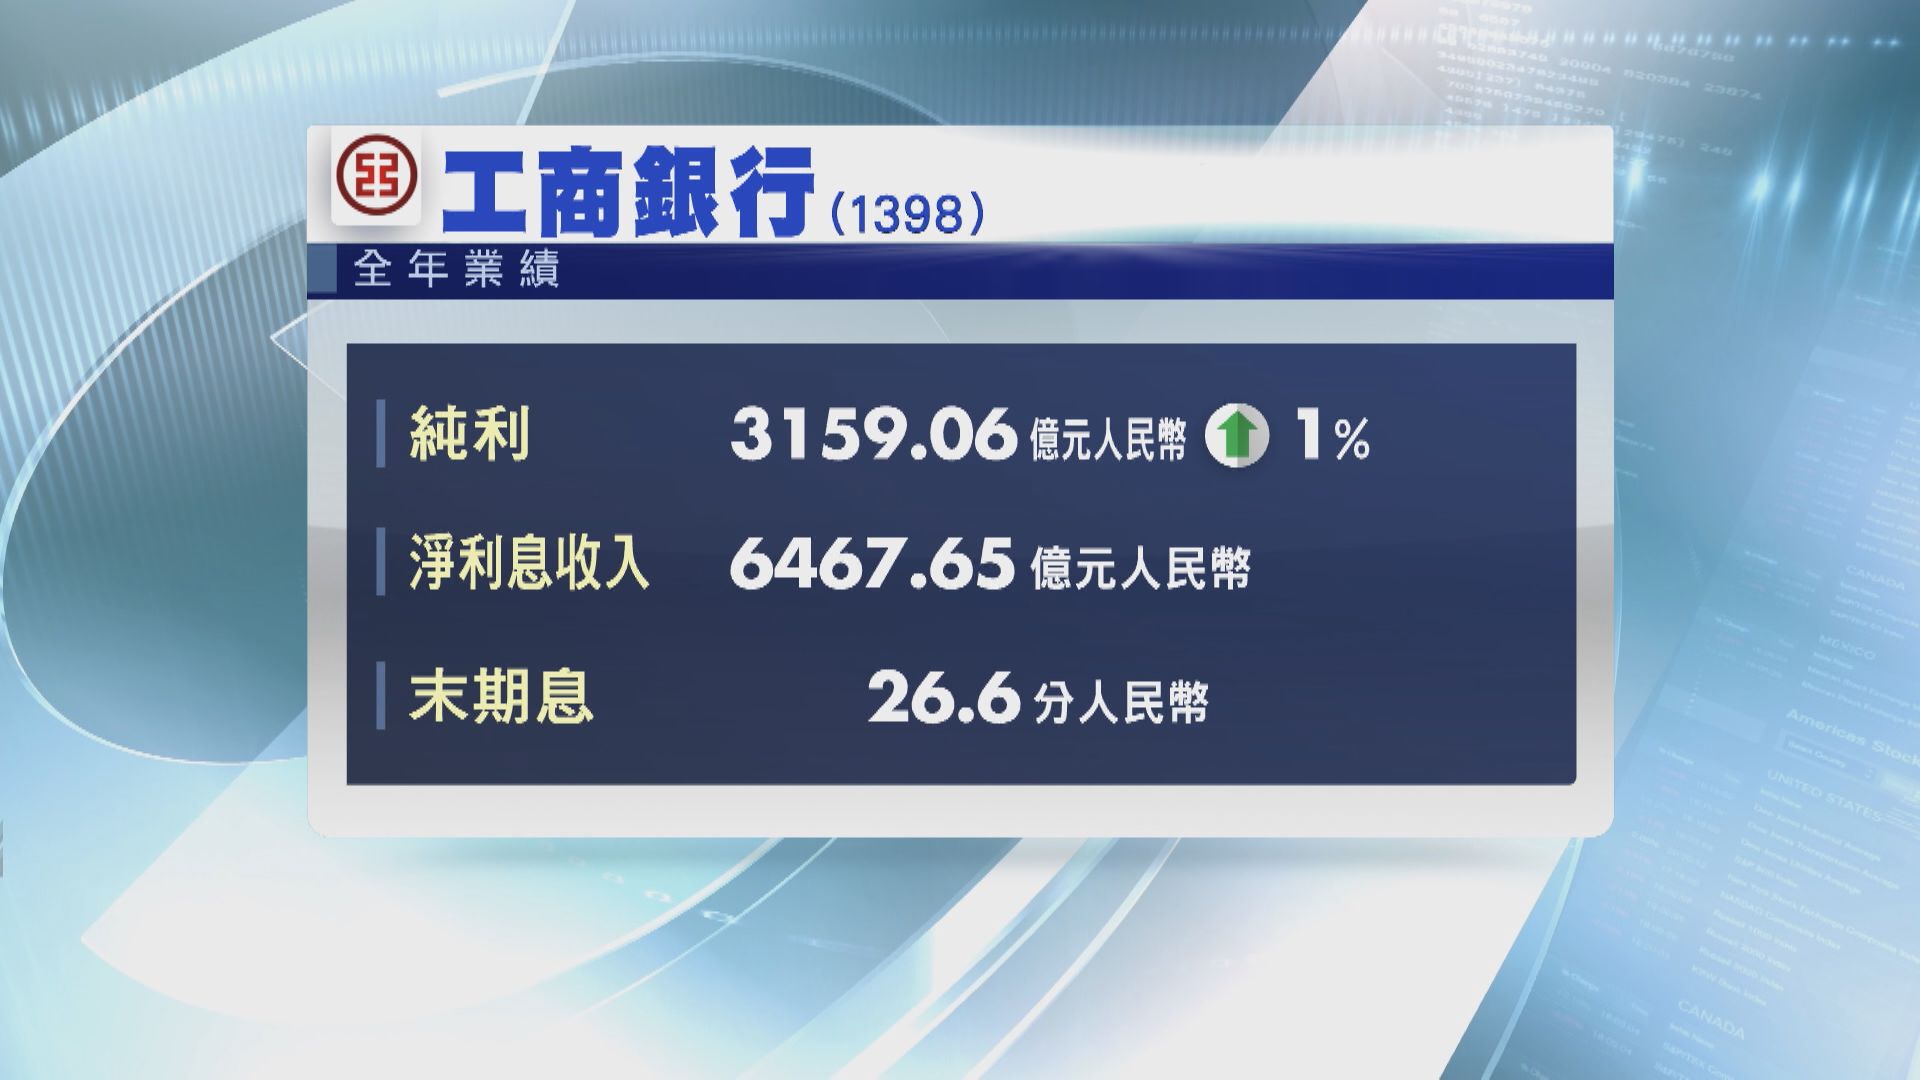 工行賺3159億人幣 交行盈利增1%